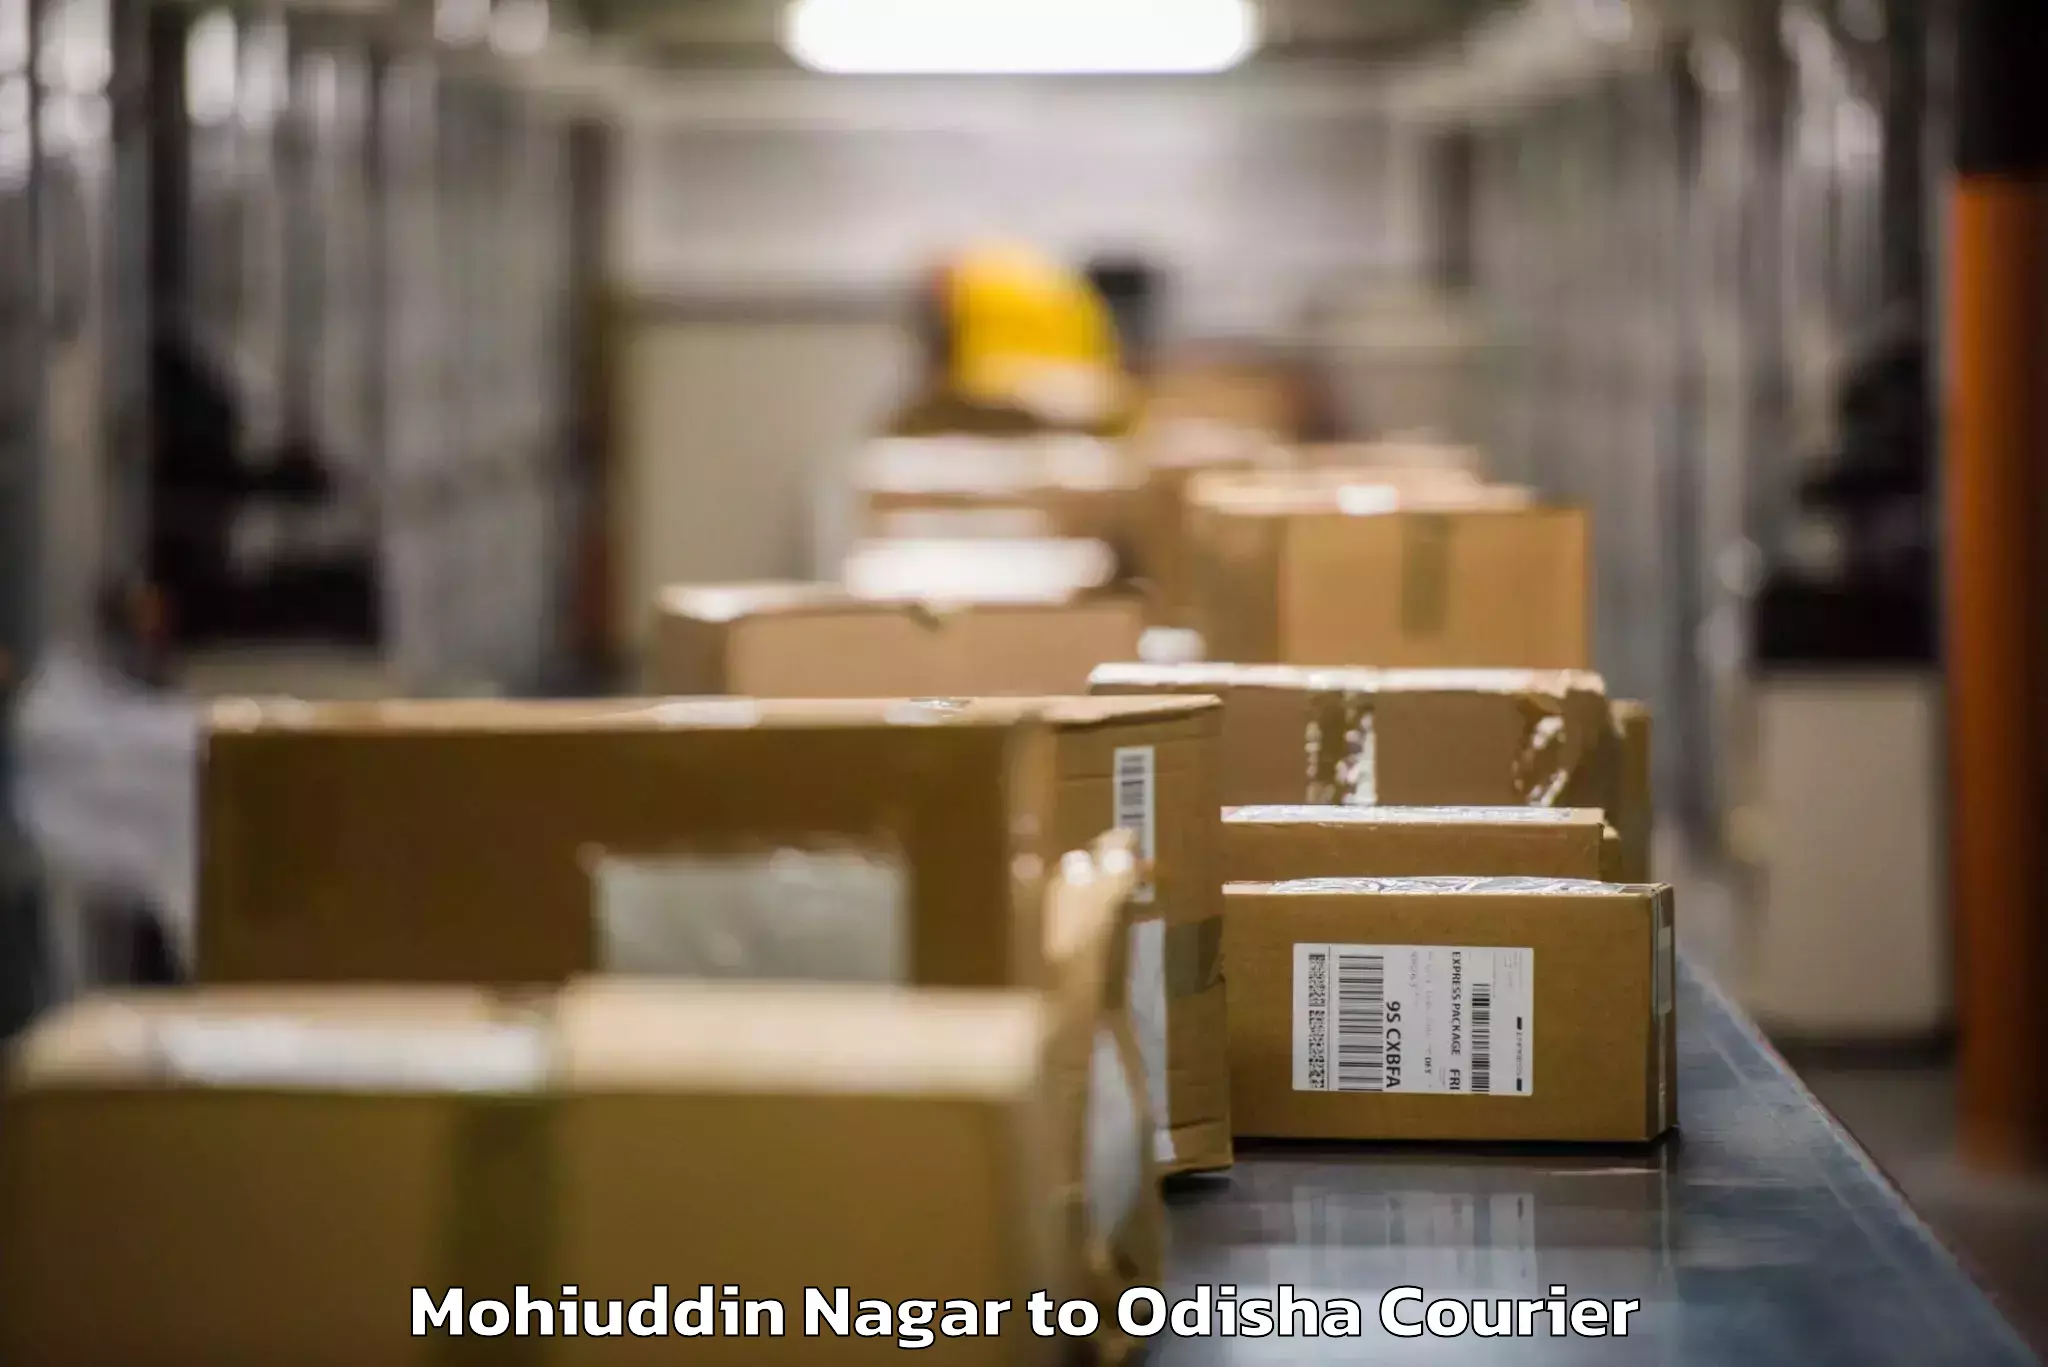 Baggage courier FAQs Mohiuddin Nagar to Kantamal